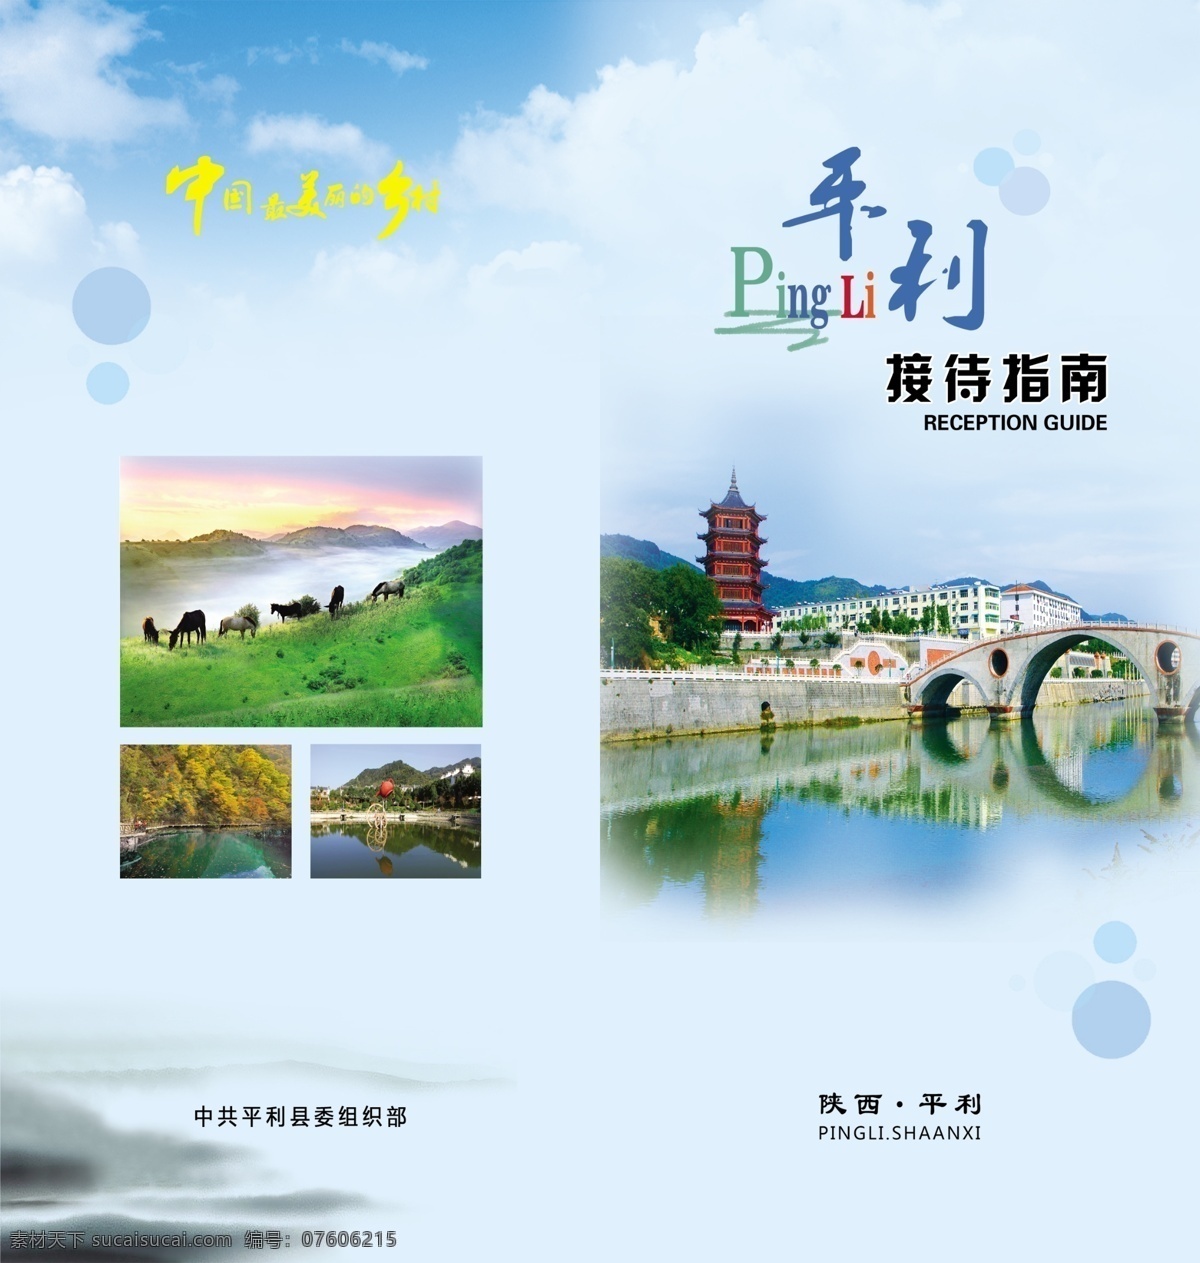 彩页封面 彩页 封面 封面设计 接待指南 平利 中国最美乡村